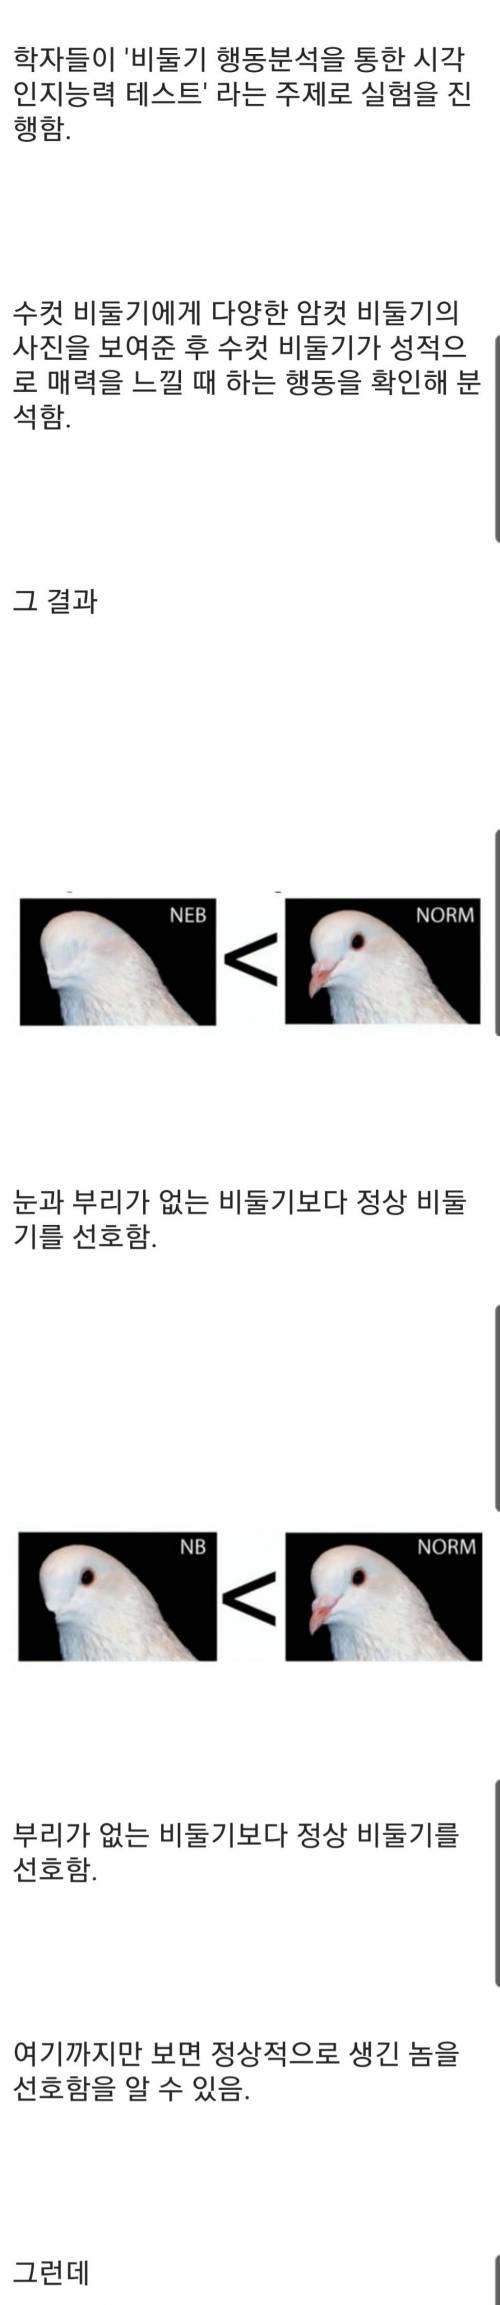 [스압] 비둘기는 서로의 얼굴을 알아볼까?